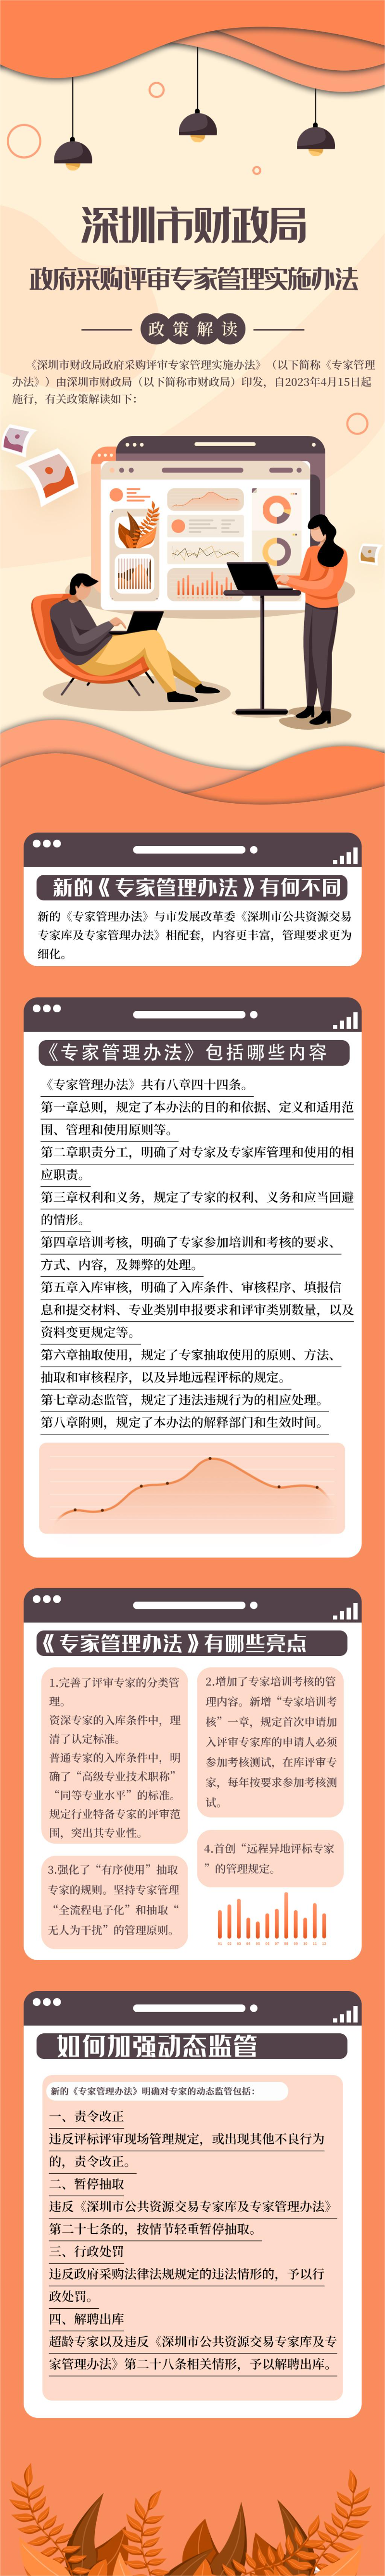 《深圳市财政局政府采购评审专家管理实施办法》政策解读V2.1.jpg